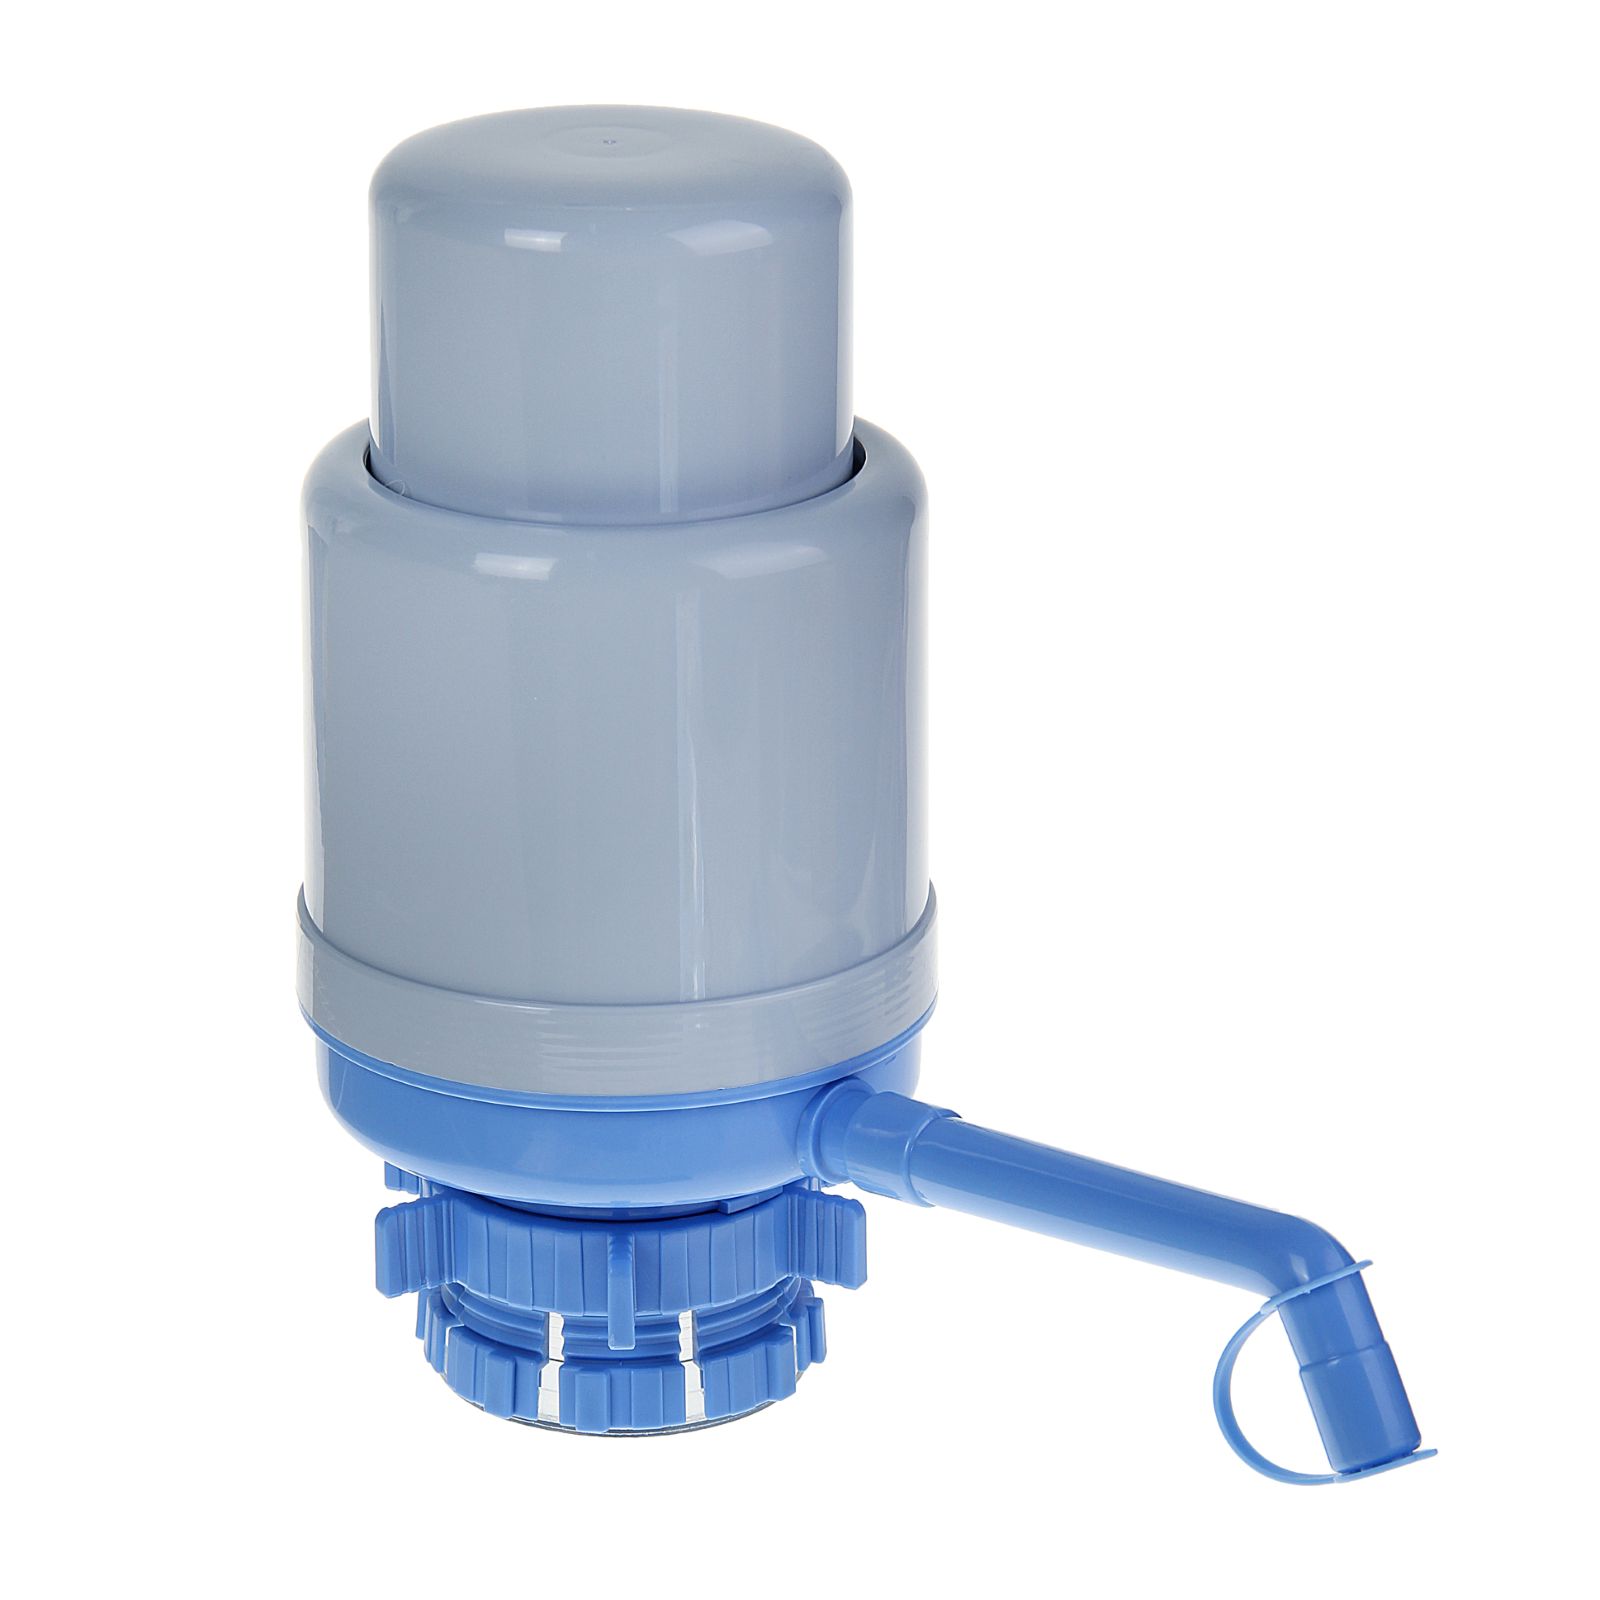 Помпа Sima-Land для воды LESOTO Standart механическая под бутыль от 11 до 19 л голубая - фото 1